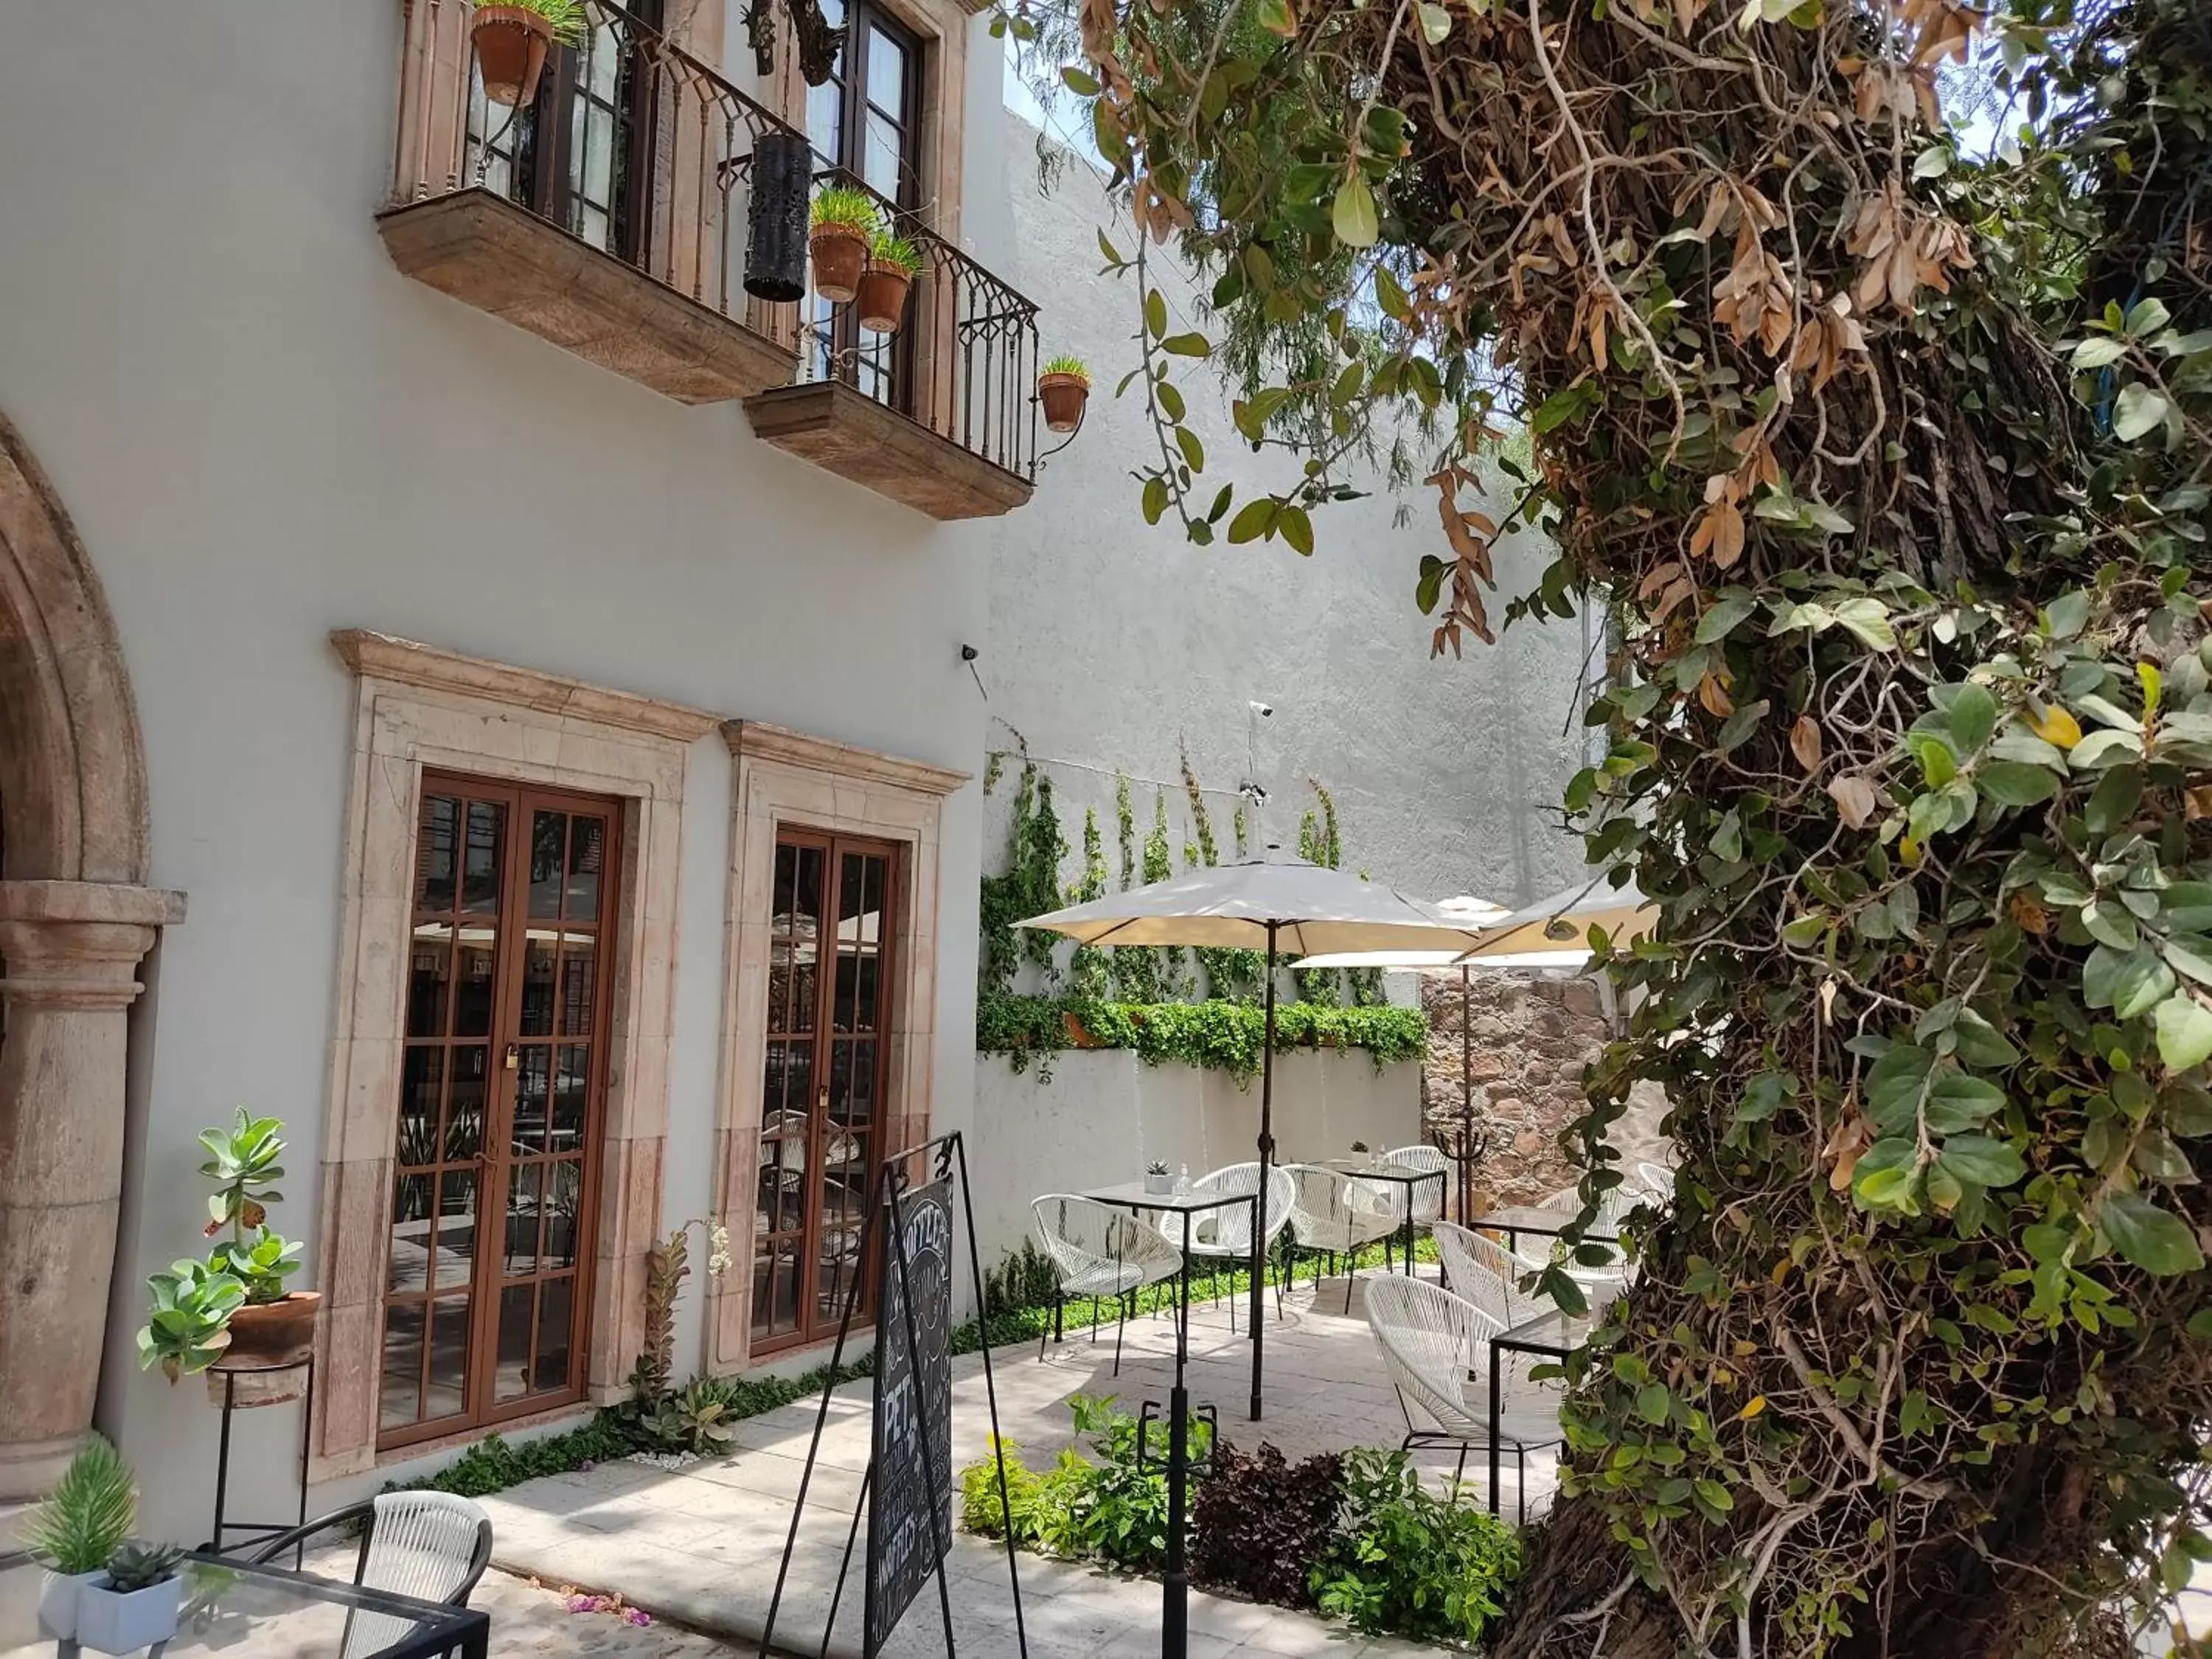 Facade/entrance in Casa Goyri San Miguel de Allende